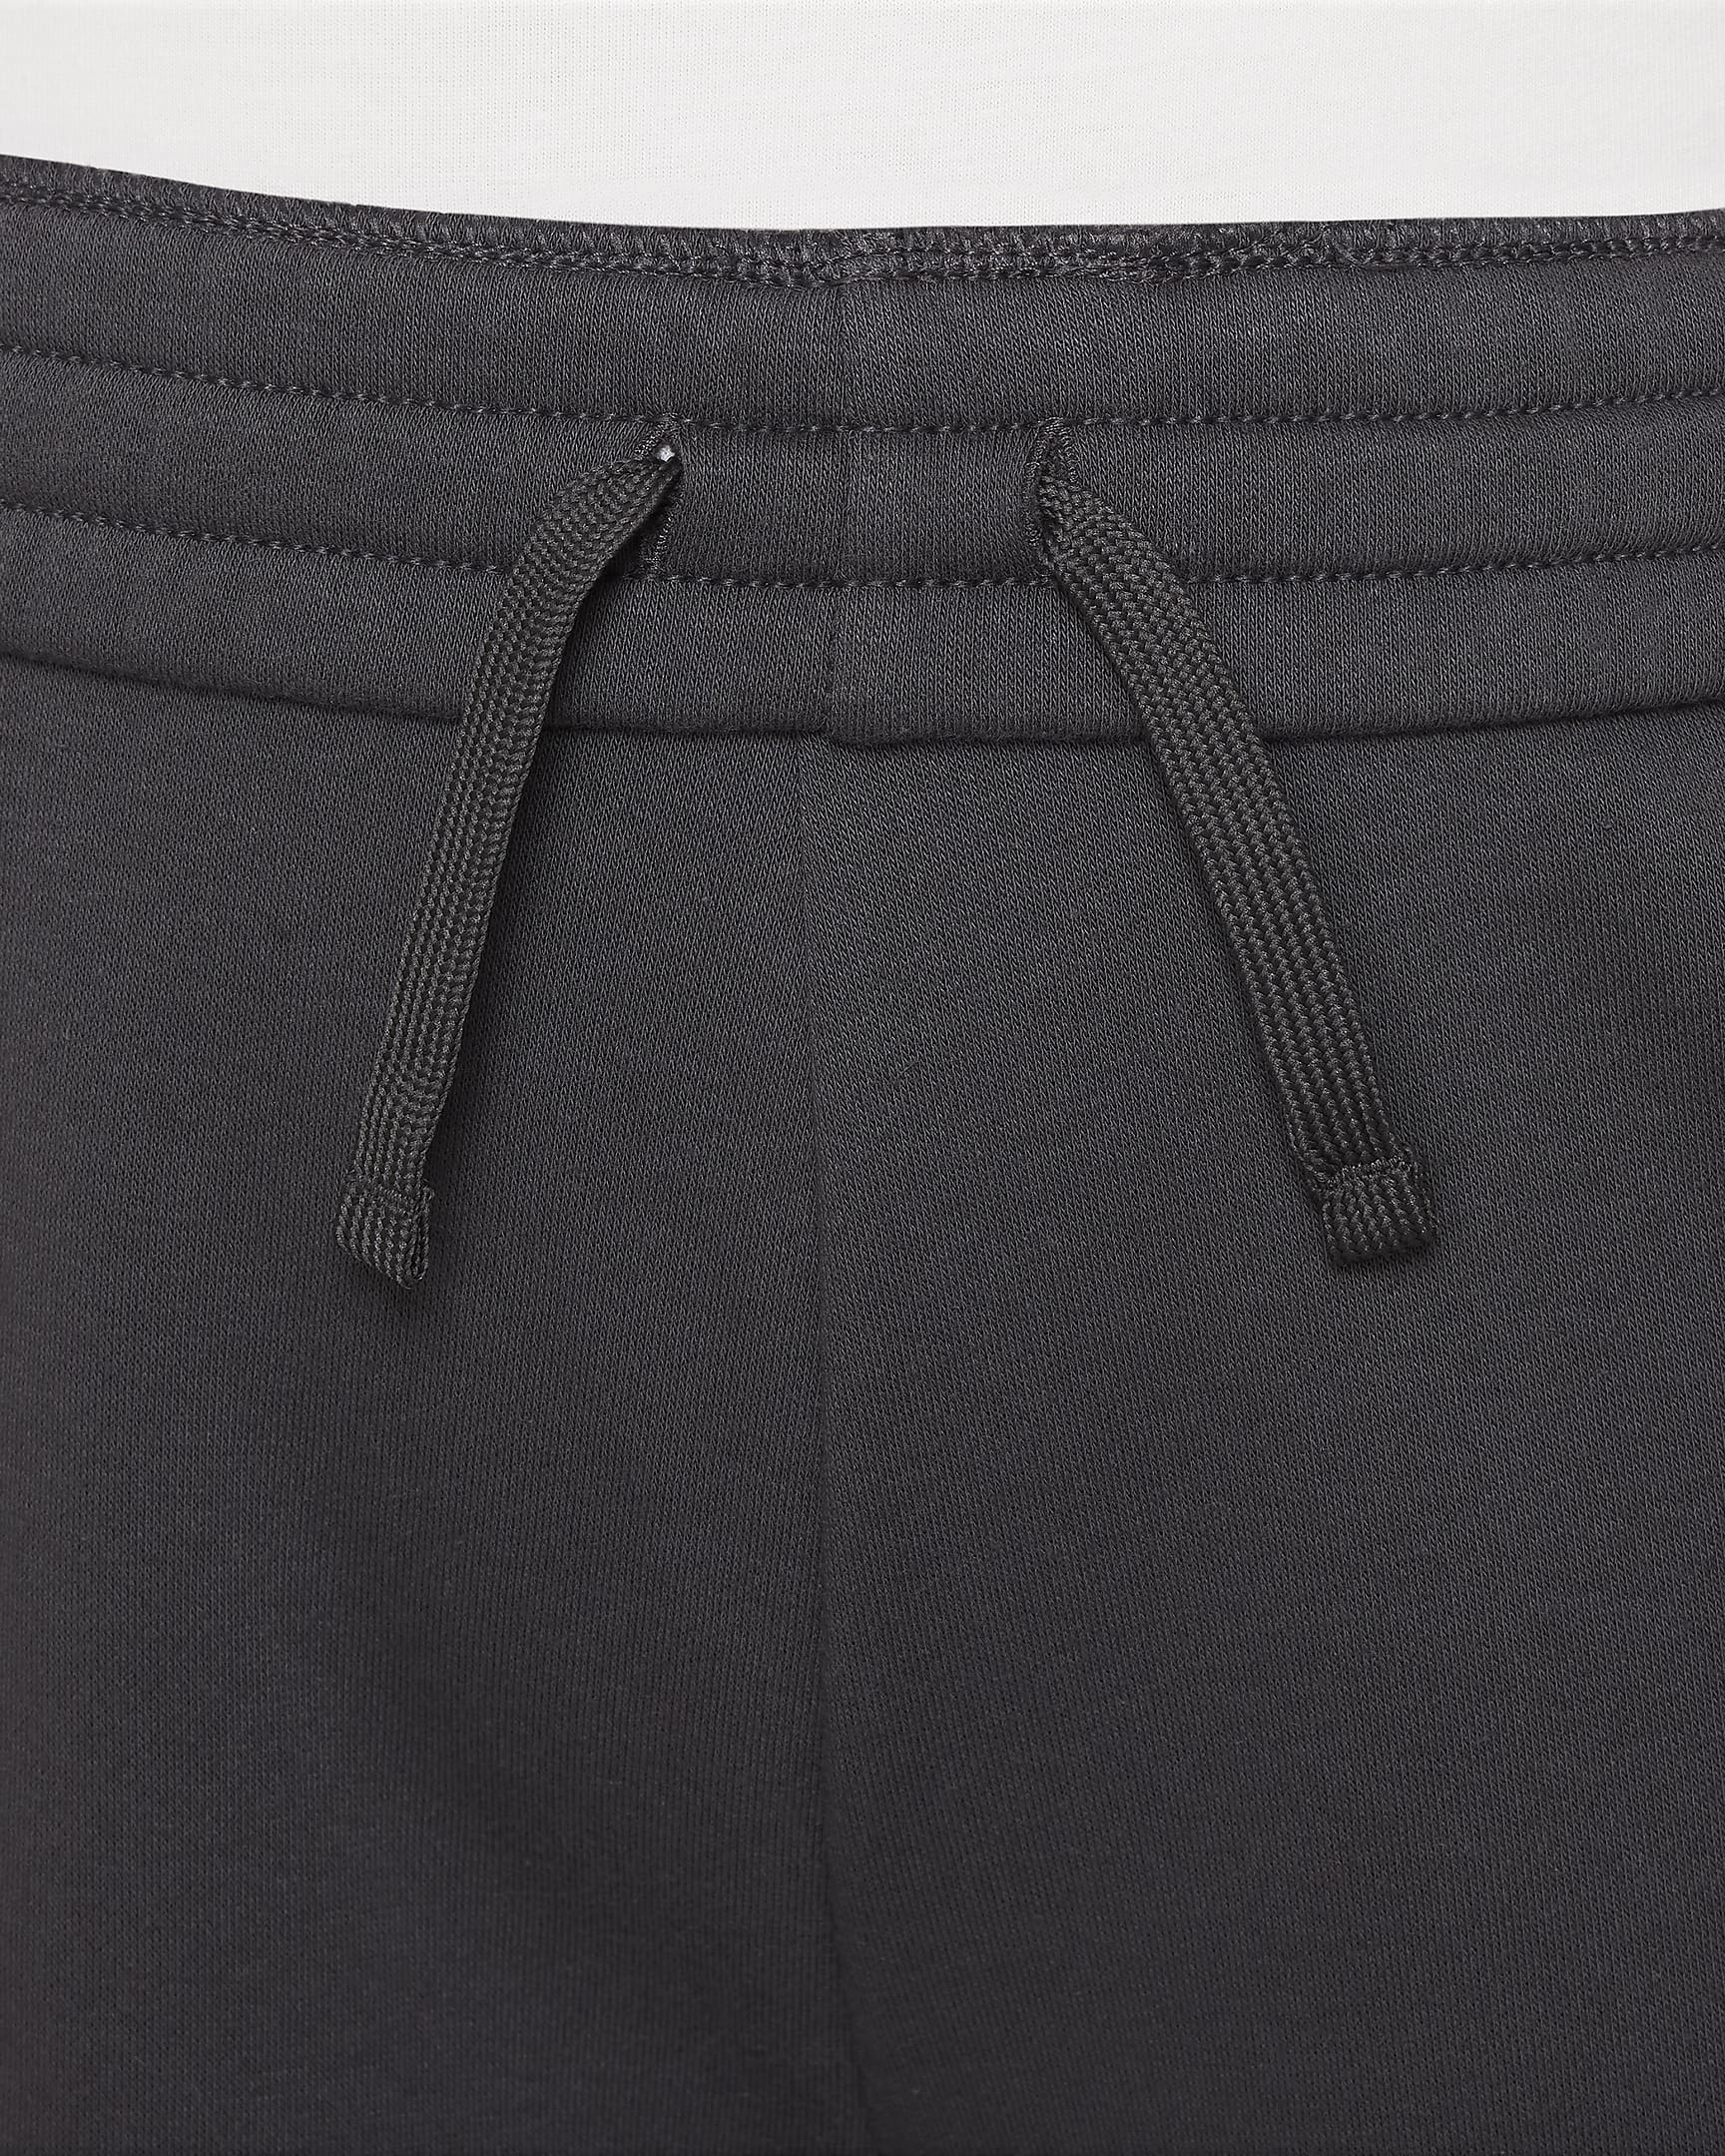 Nike Sportswear extragroße Fleece-Hose für ältere Kinder (Mädchen) - Anthracite/Weiß